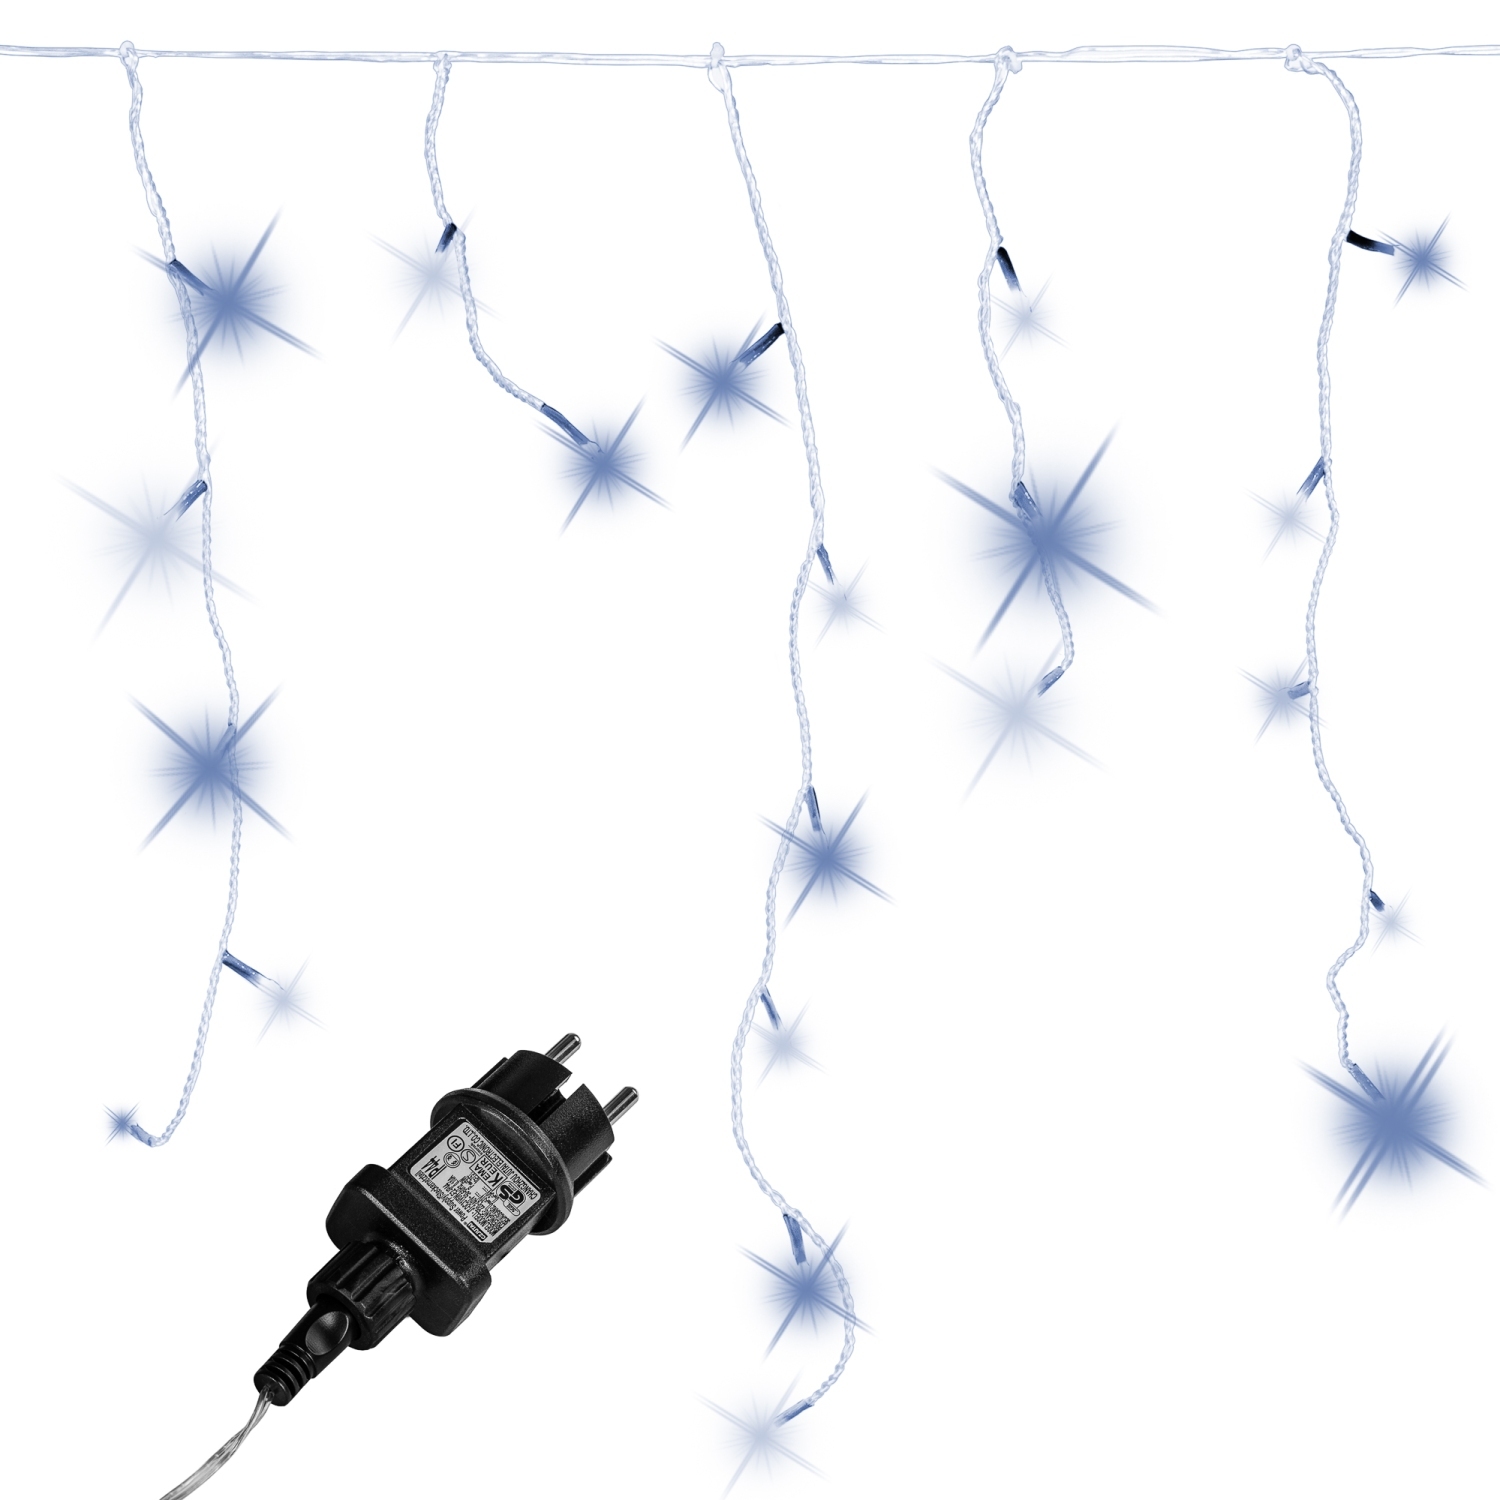 Lichtgordijn – Ijspegelverlichting – Kerstverlichting Gordijn – LED Gordijn – Kerstverlichting – Kerstversiering – Lichtsnoer – Regenlichtketting – Voor Binnen en Buiten – Met afstandsbediening – 5 m – Koud wit